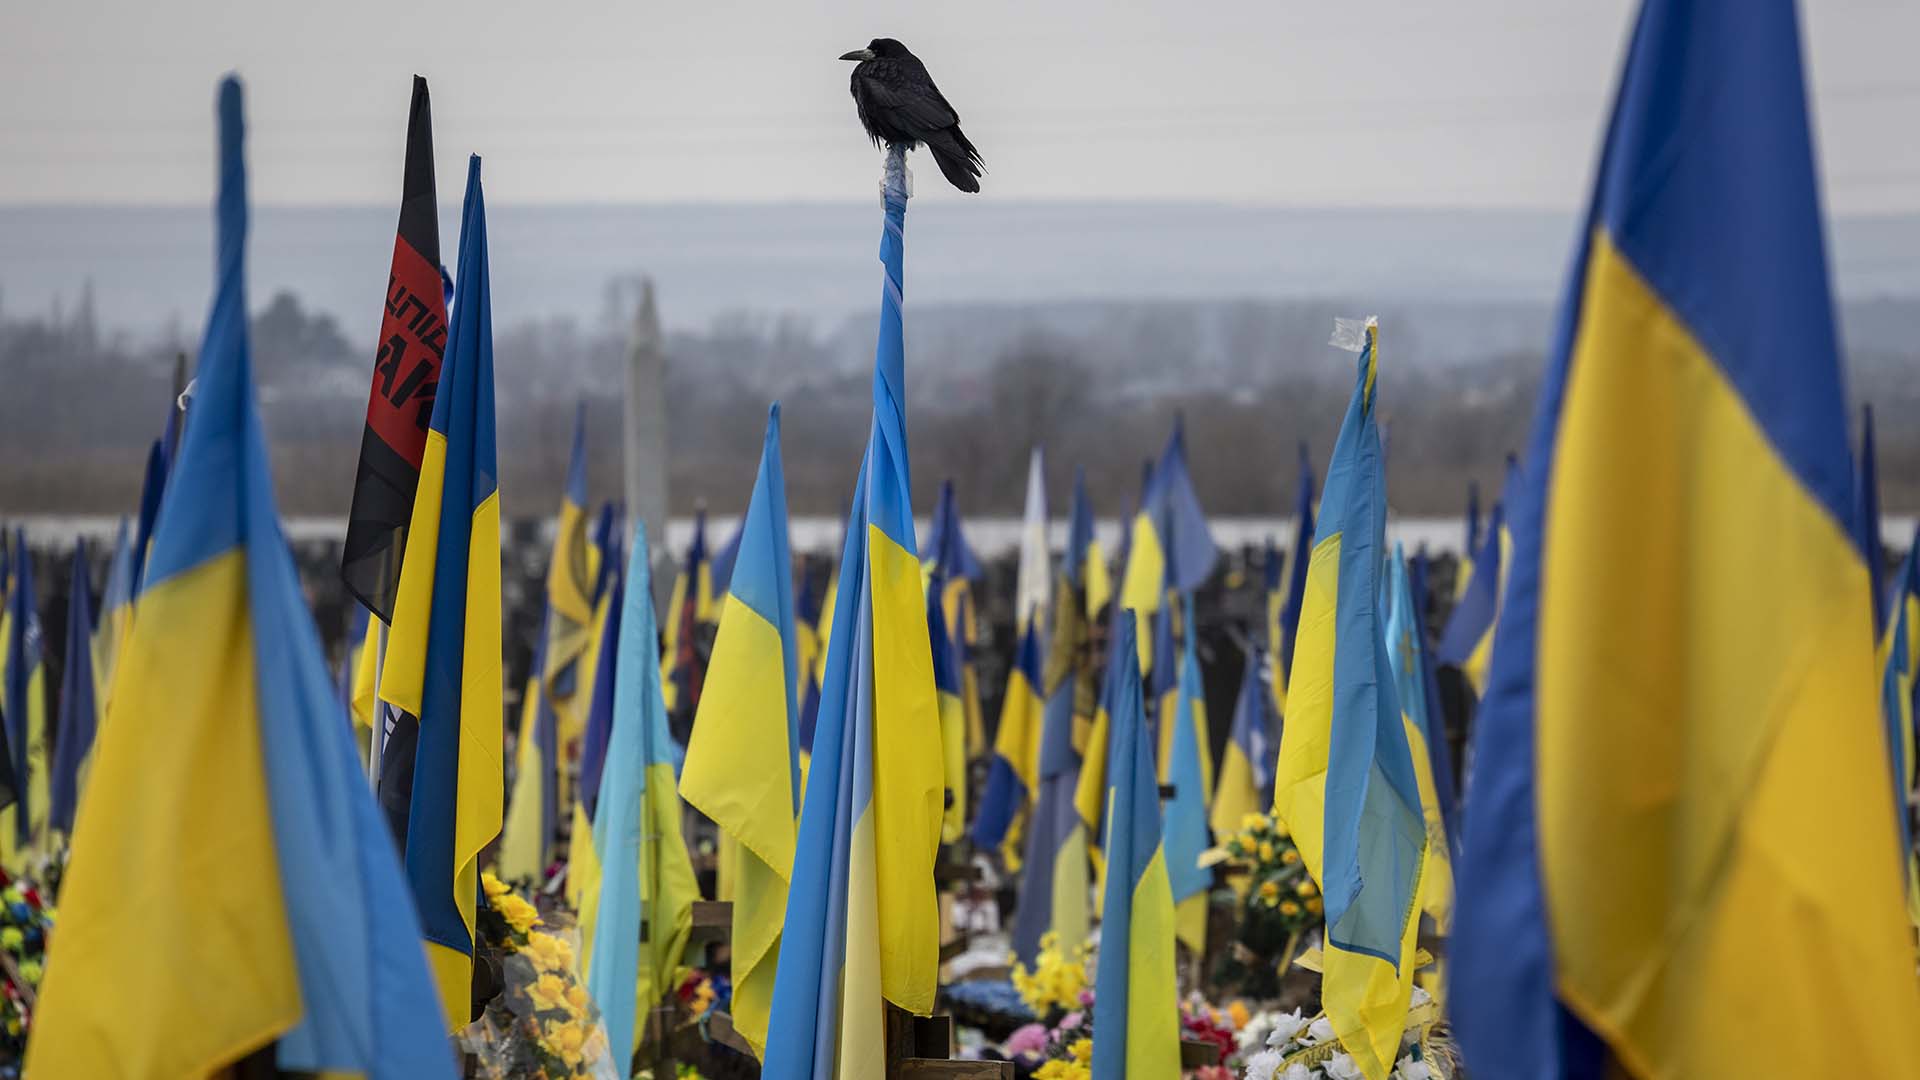 Un cuervo se sienta encima de una bandera ucraniana en la sección militar de un cementerio el 11 de febrero de 2023 en Kharkiv, Ucrania.